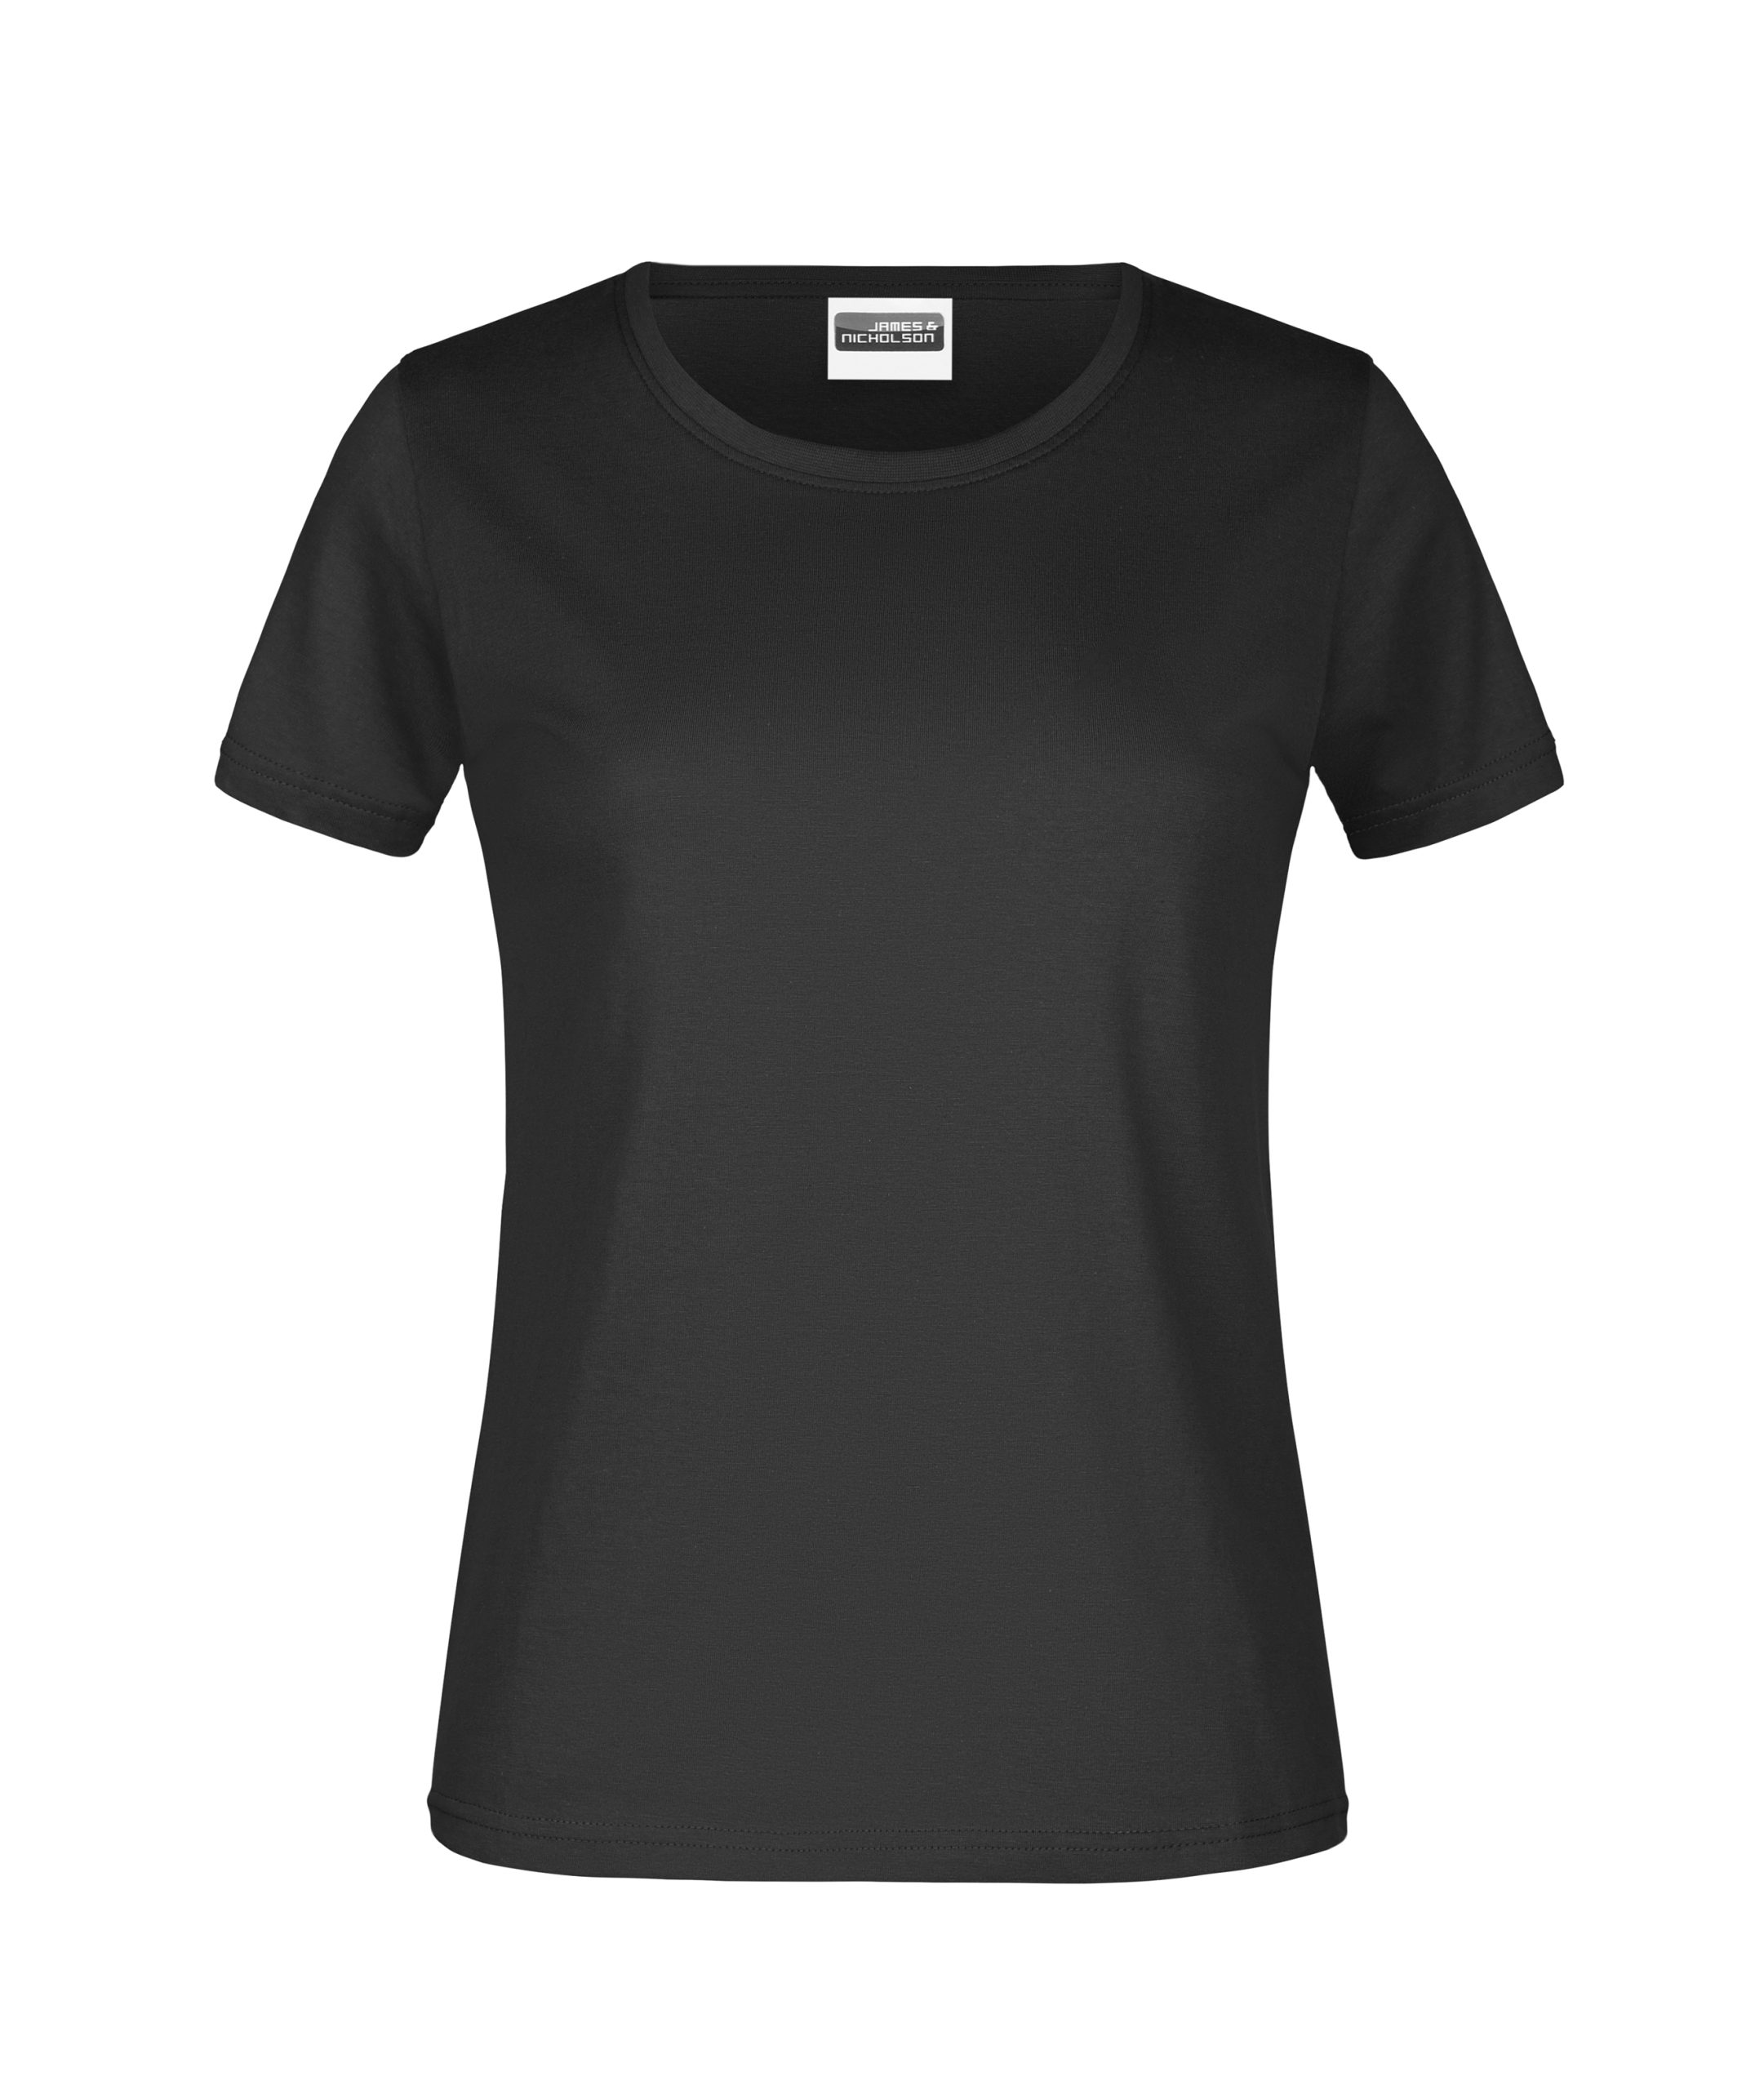 Bestens Beworben T-Shirt gr schwarz Lady 180 -